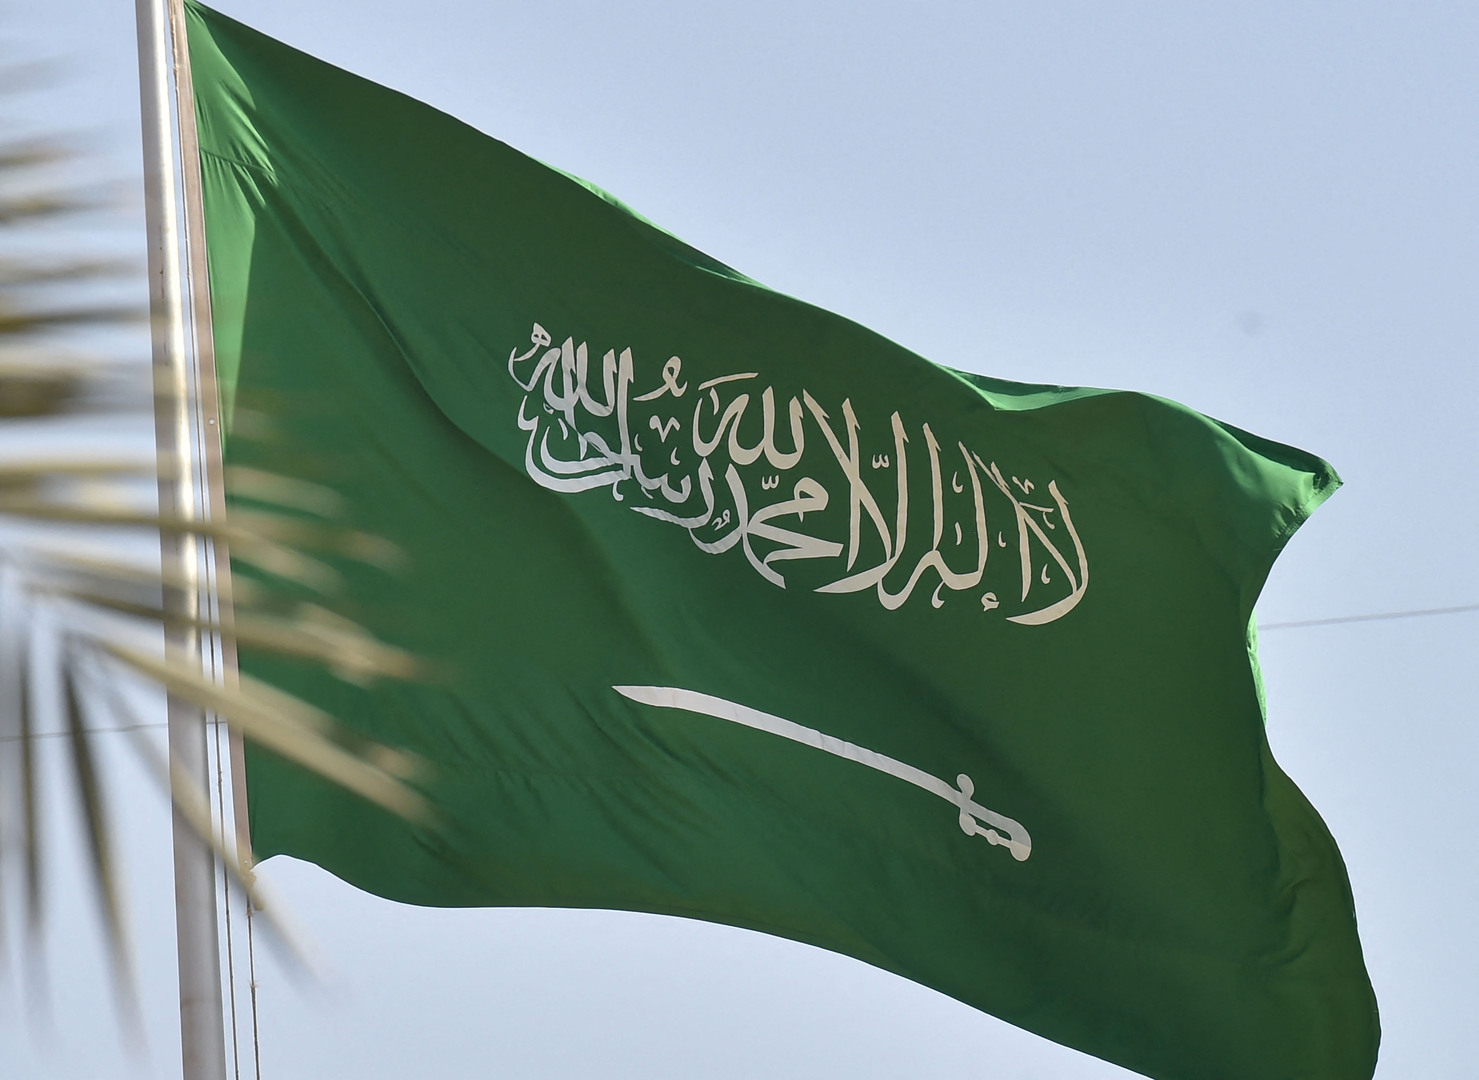  لأول مرة في تاريخها.. المملكة تمنح الجنسية السعودية للمقيمين من هذه الفئات .. والتجنيس فوراً؟